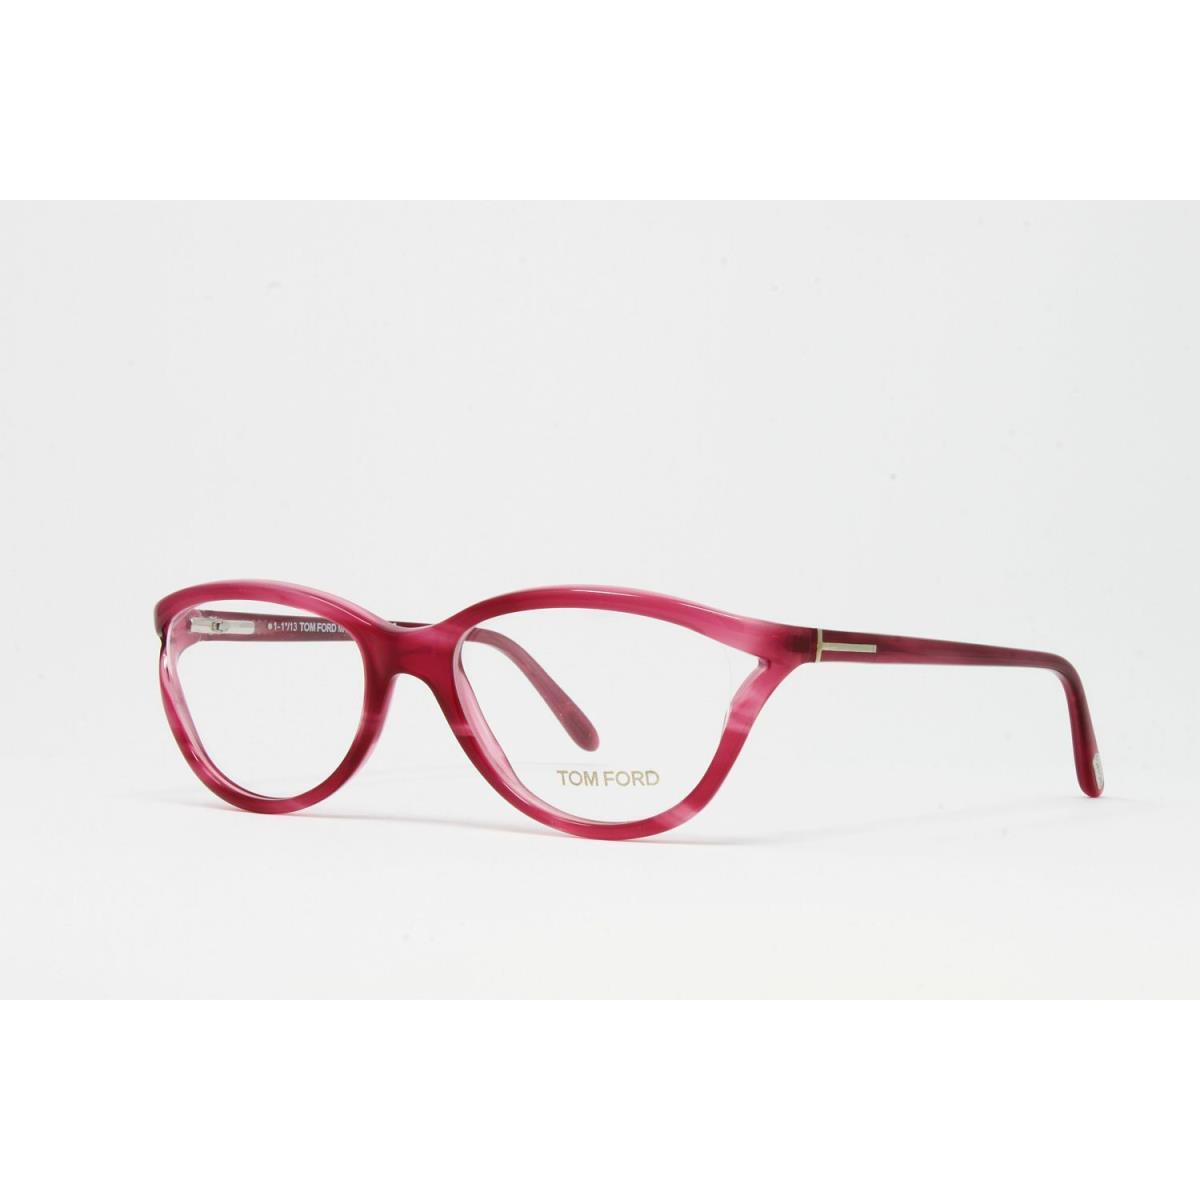 Tom Ford eyeglasses Color - Red Frame 0